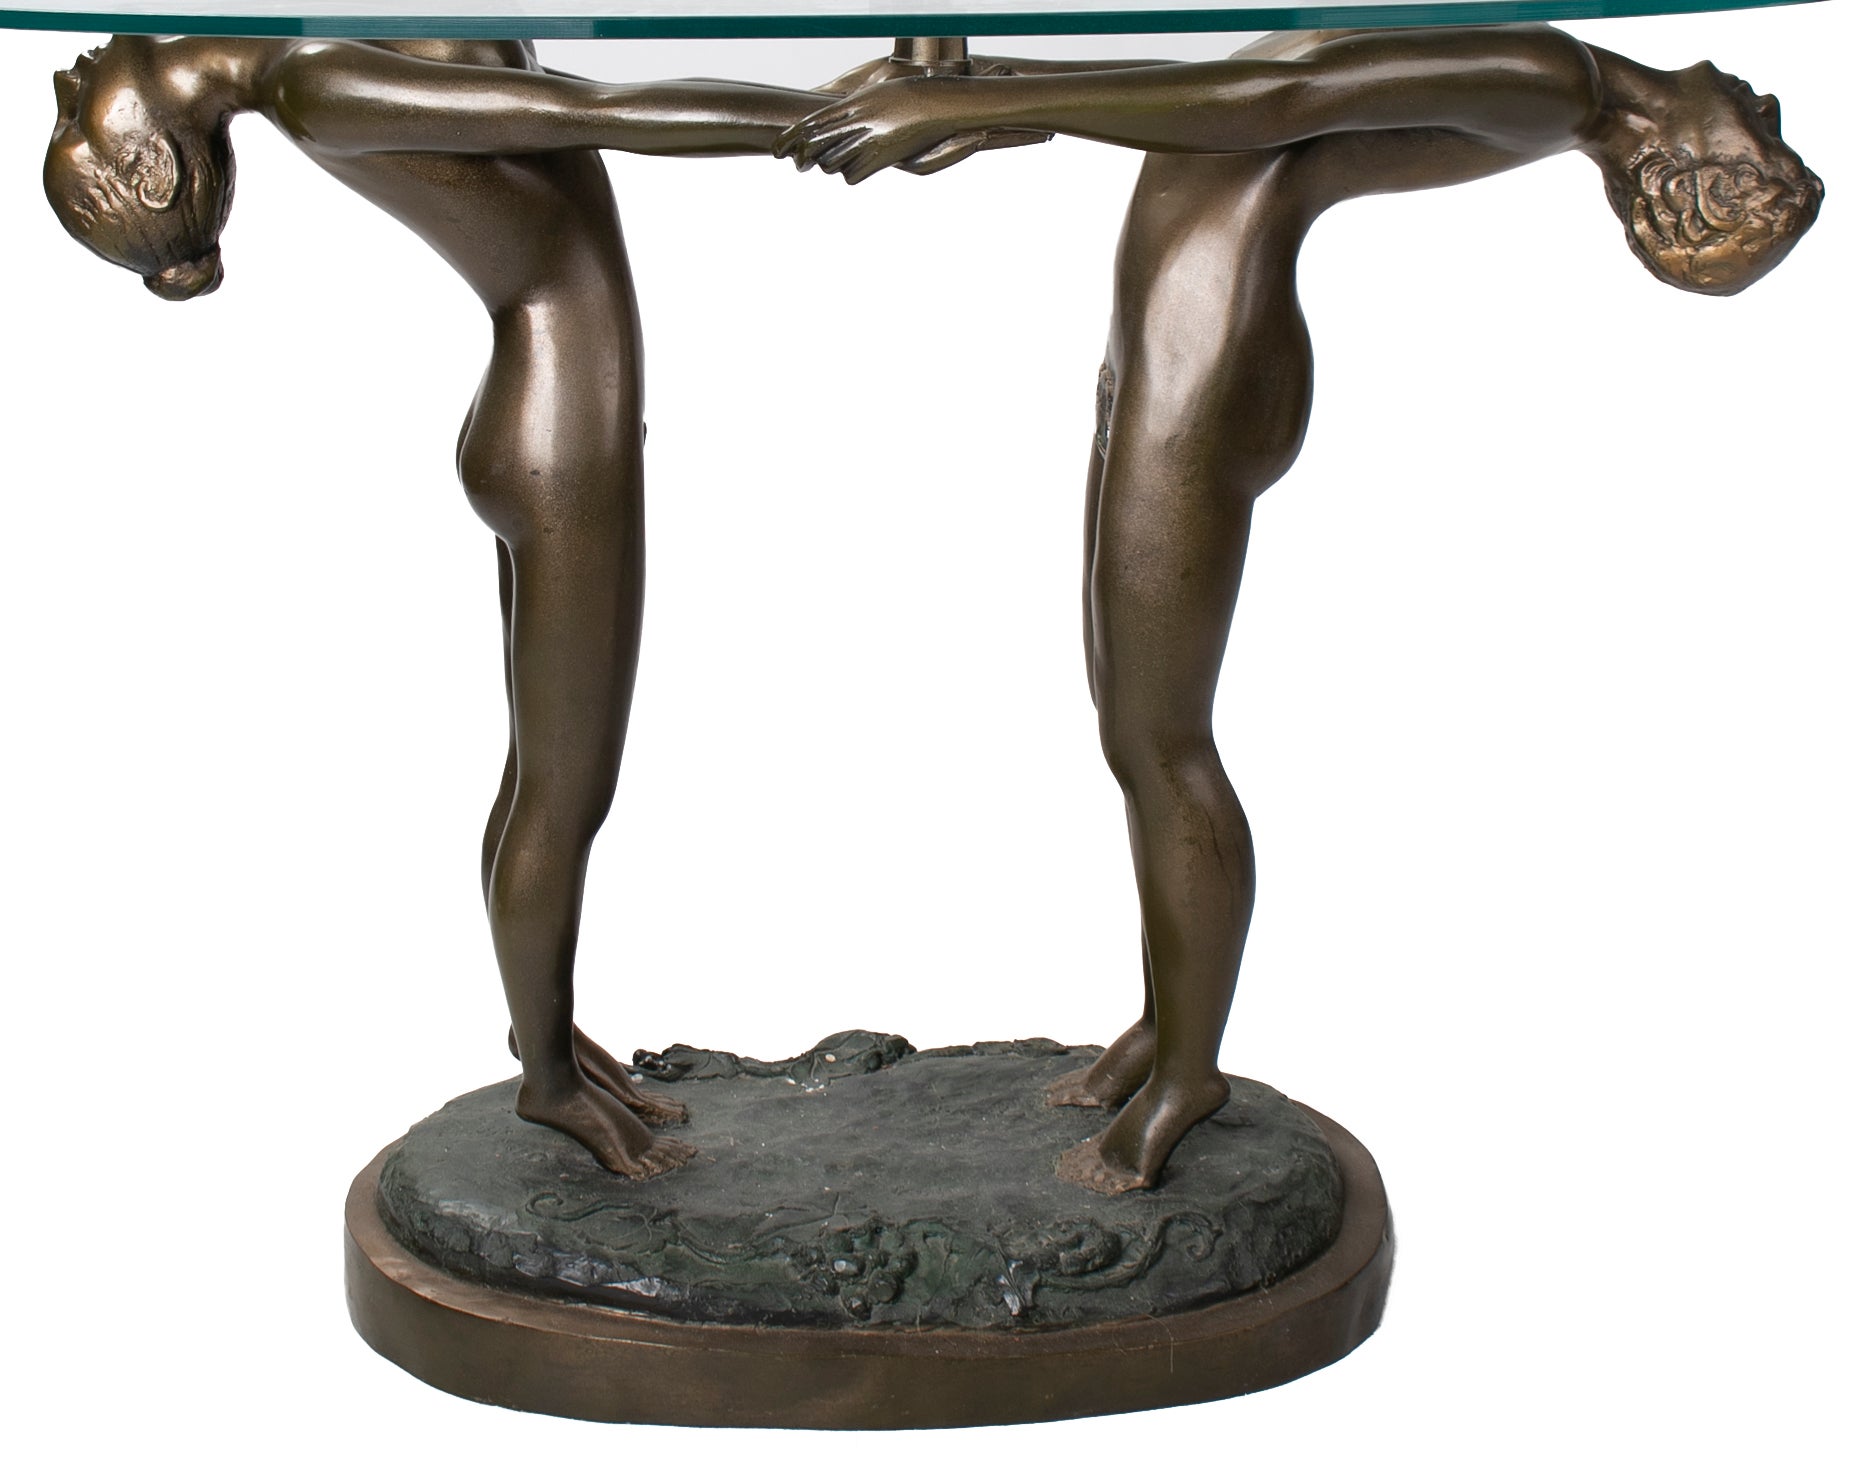 Mesa de Pedestal con Hombre y Mujer de Bronce con Tapa de Cristal, de los Años 80